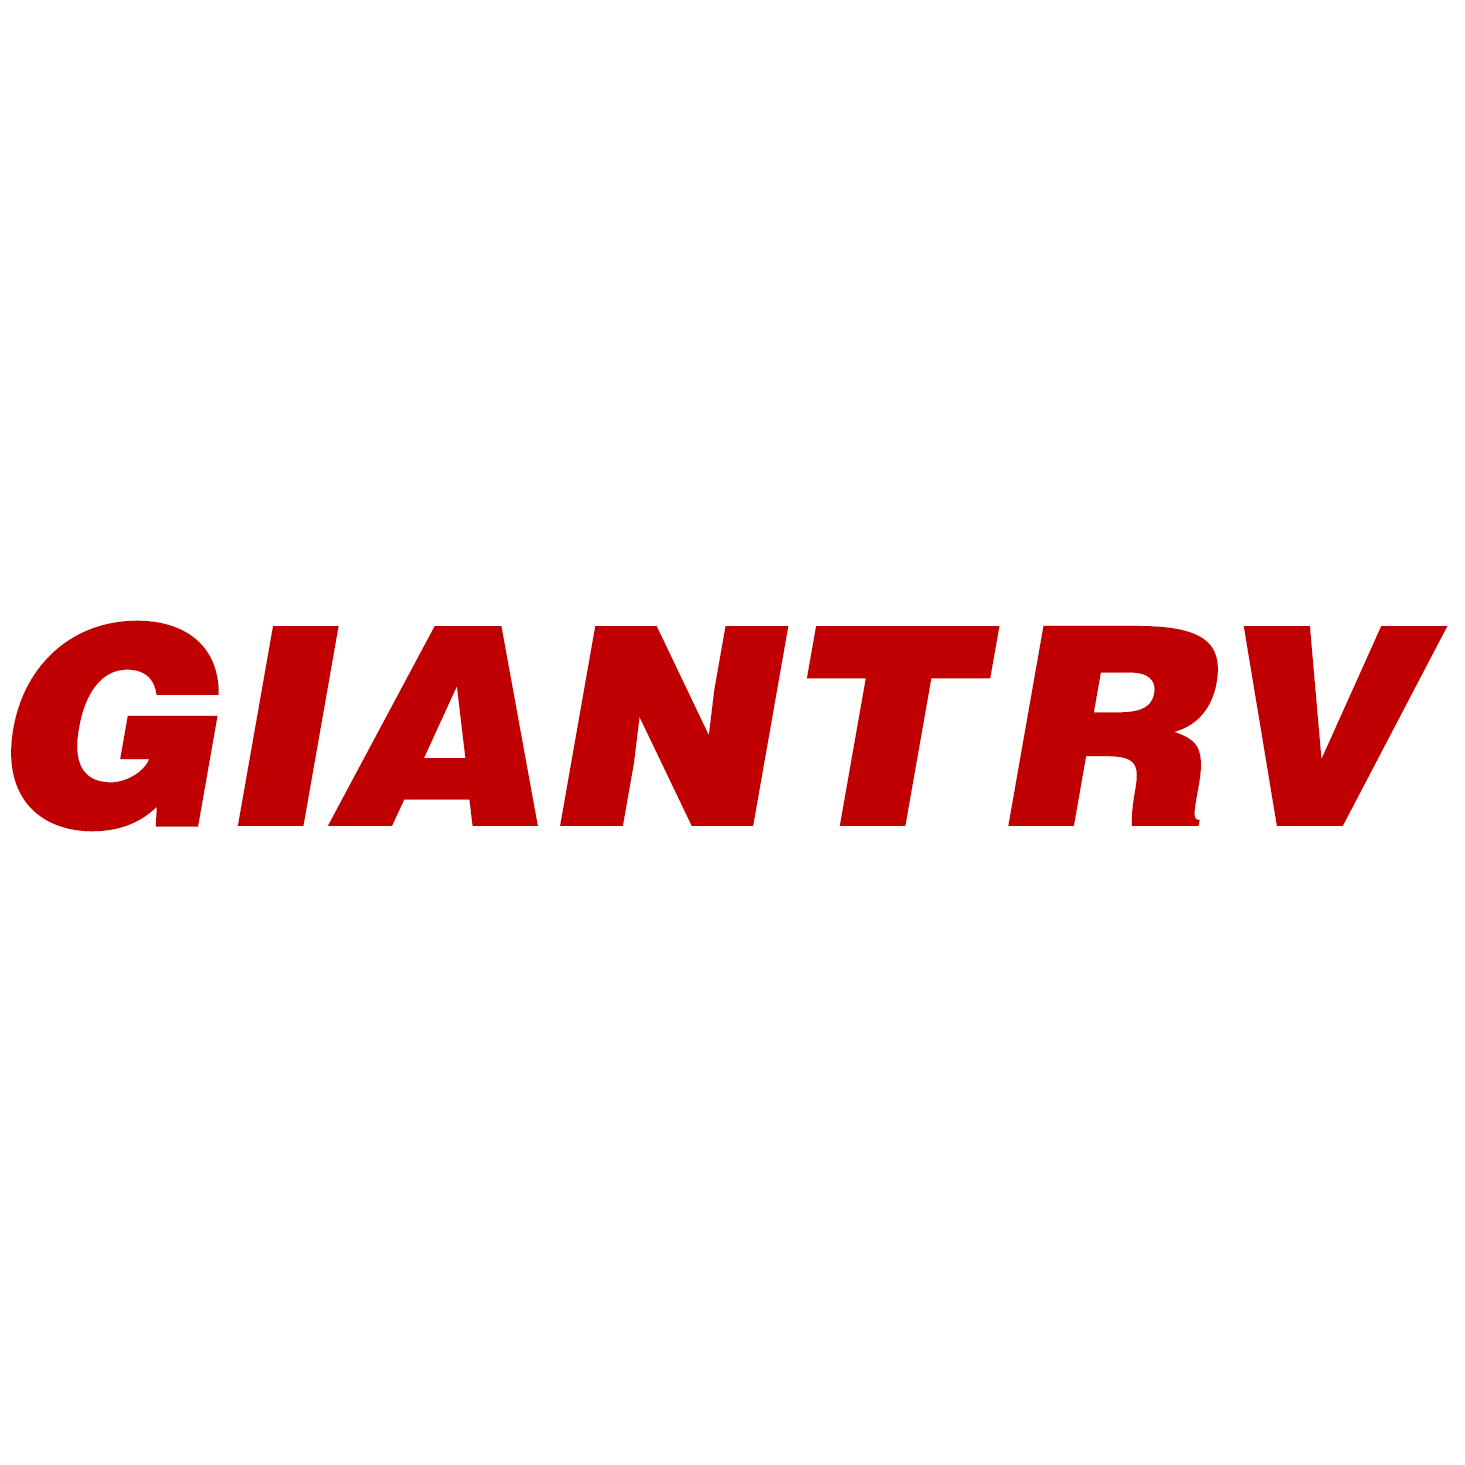 Giant RV-Colton Logo